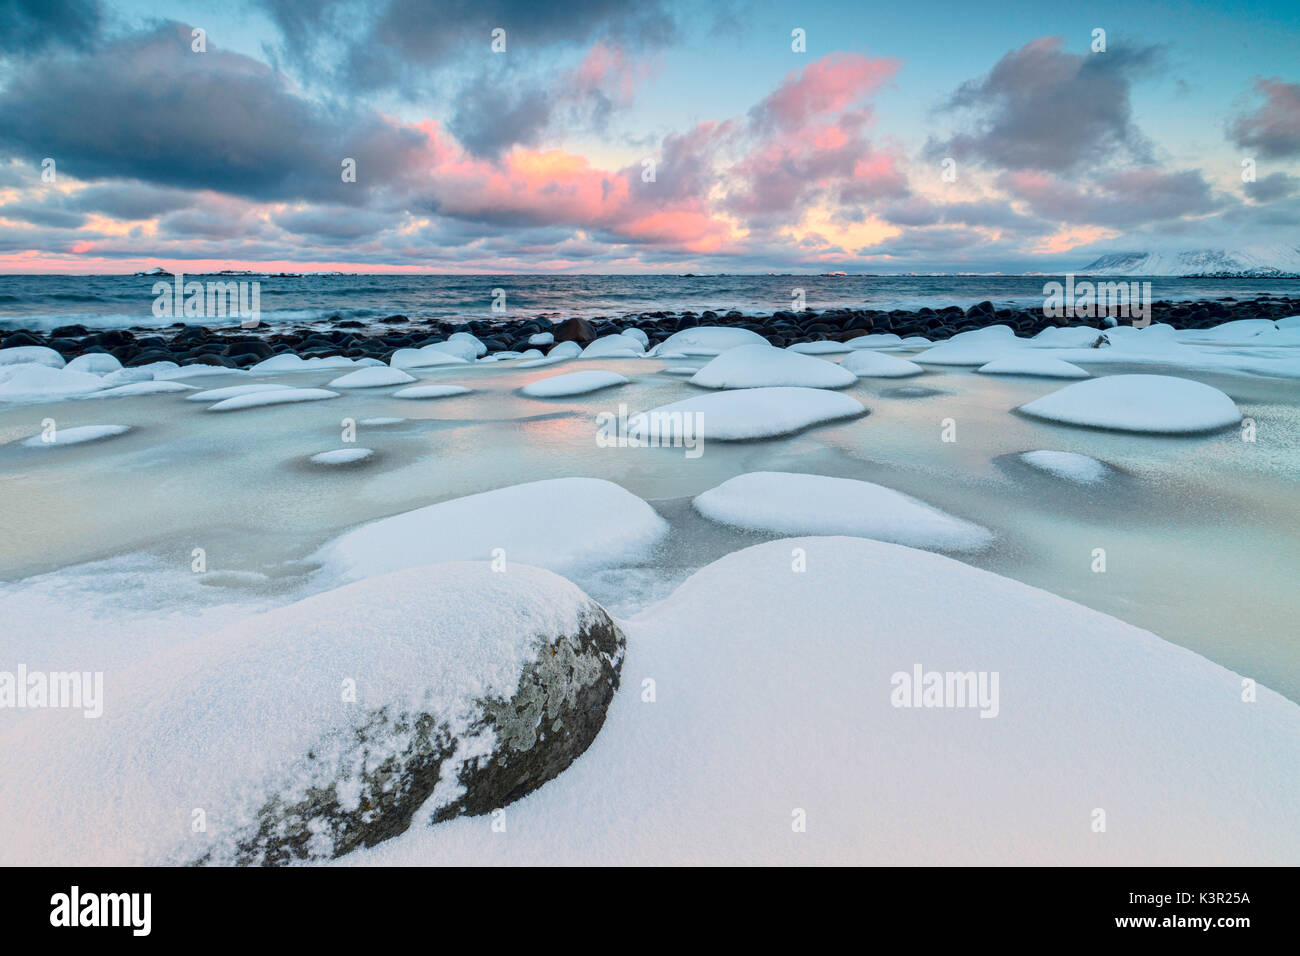 Dawn auf dem kalten Meer durch verschneite Felsen durch Wind und Eis in Eggum Insel Vestvagøy Lofoten norwegen Europa geformt umgeben Stockfoto